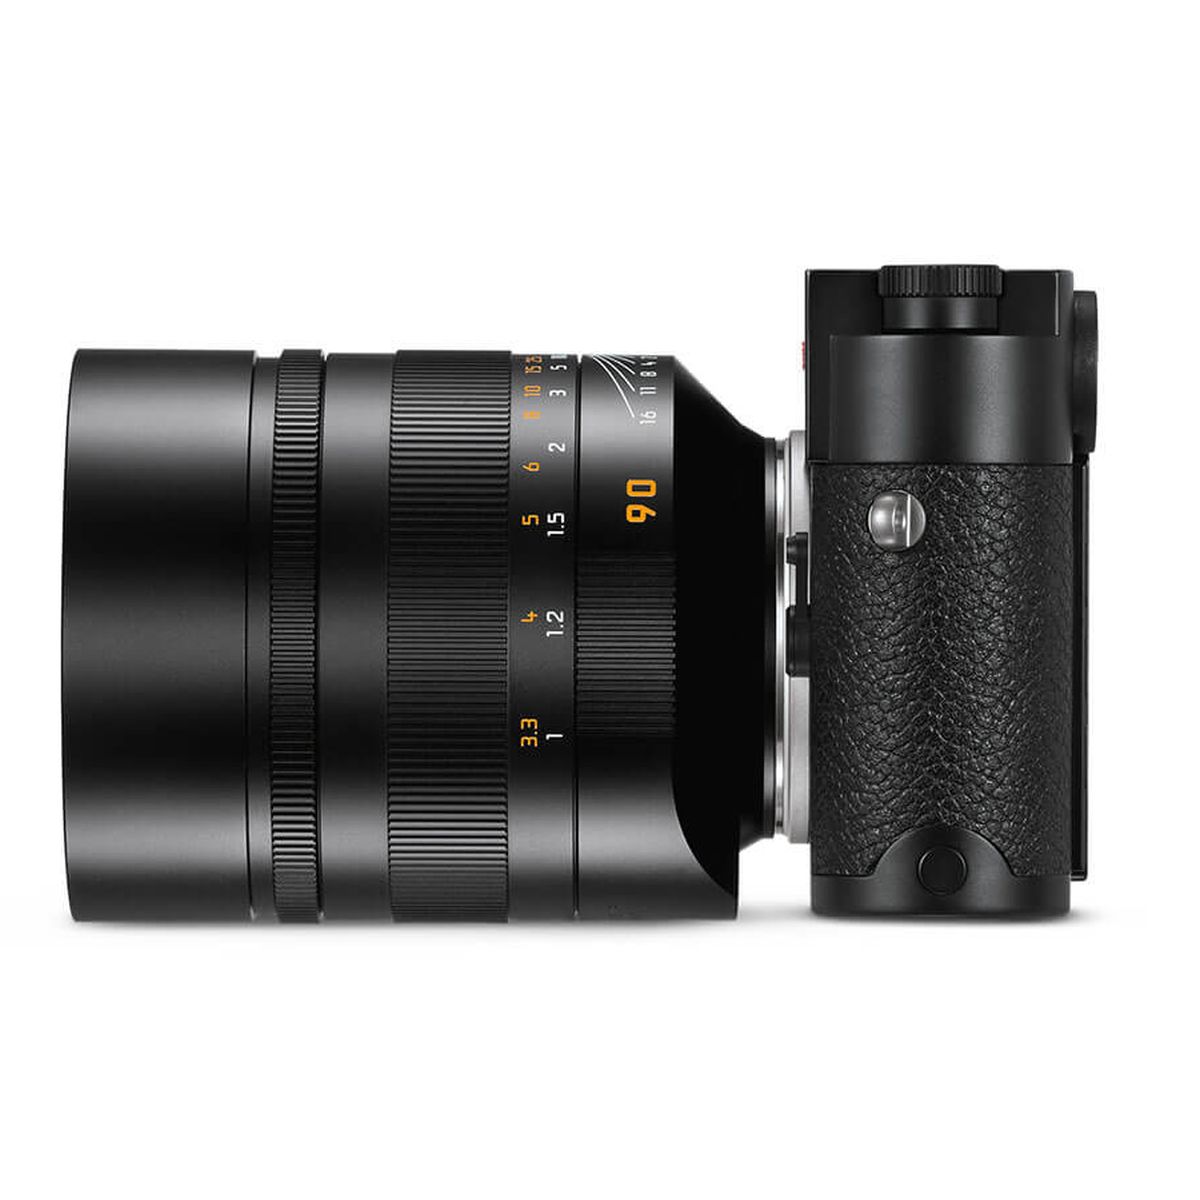 Leica Summilux-M 90 mm 1:1.5 ASPH